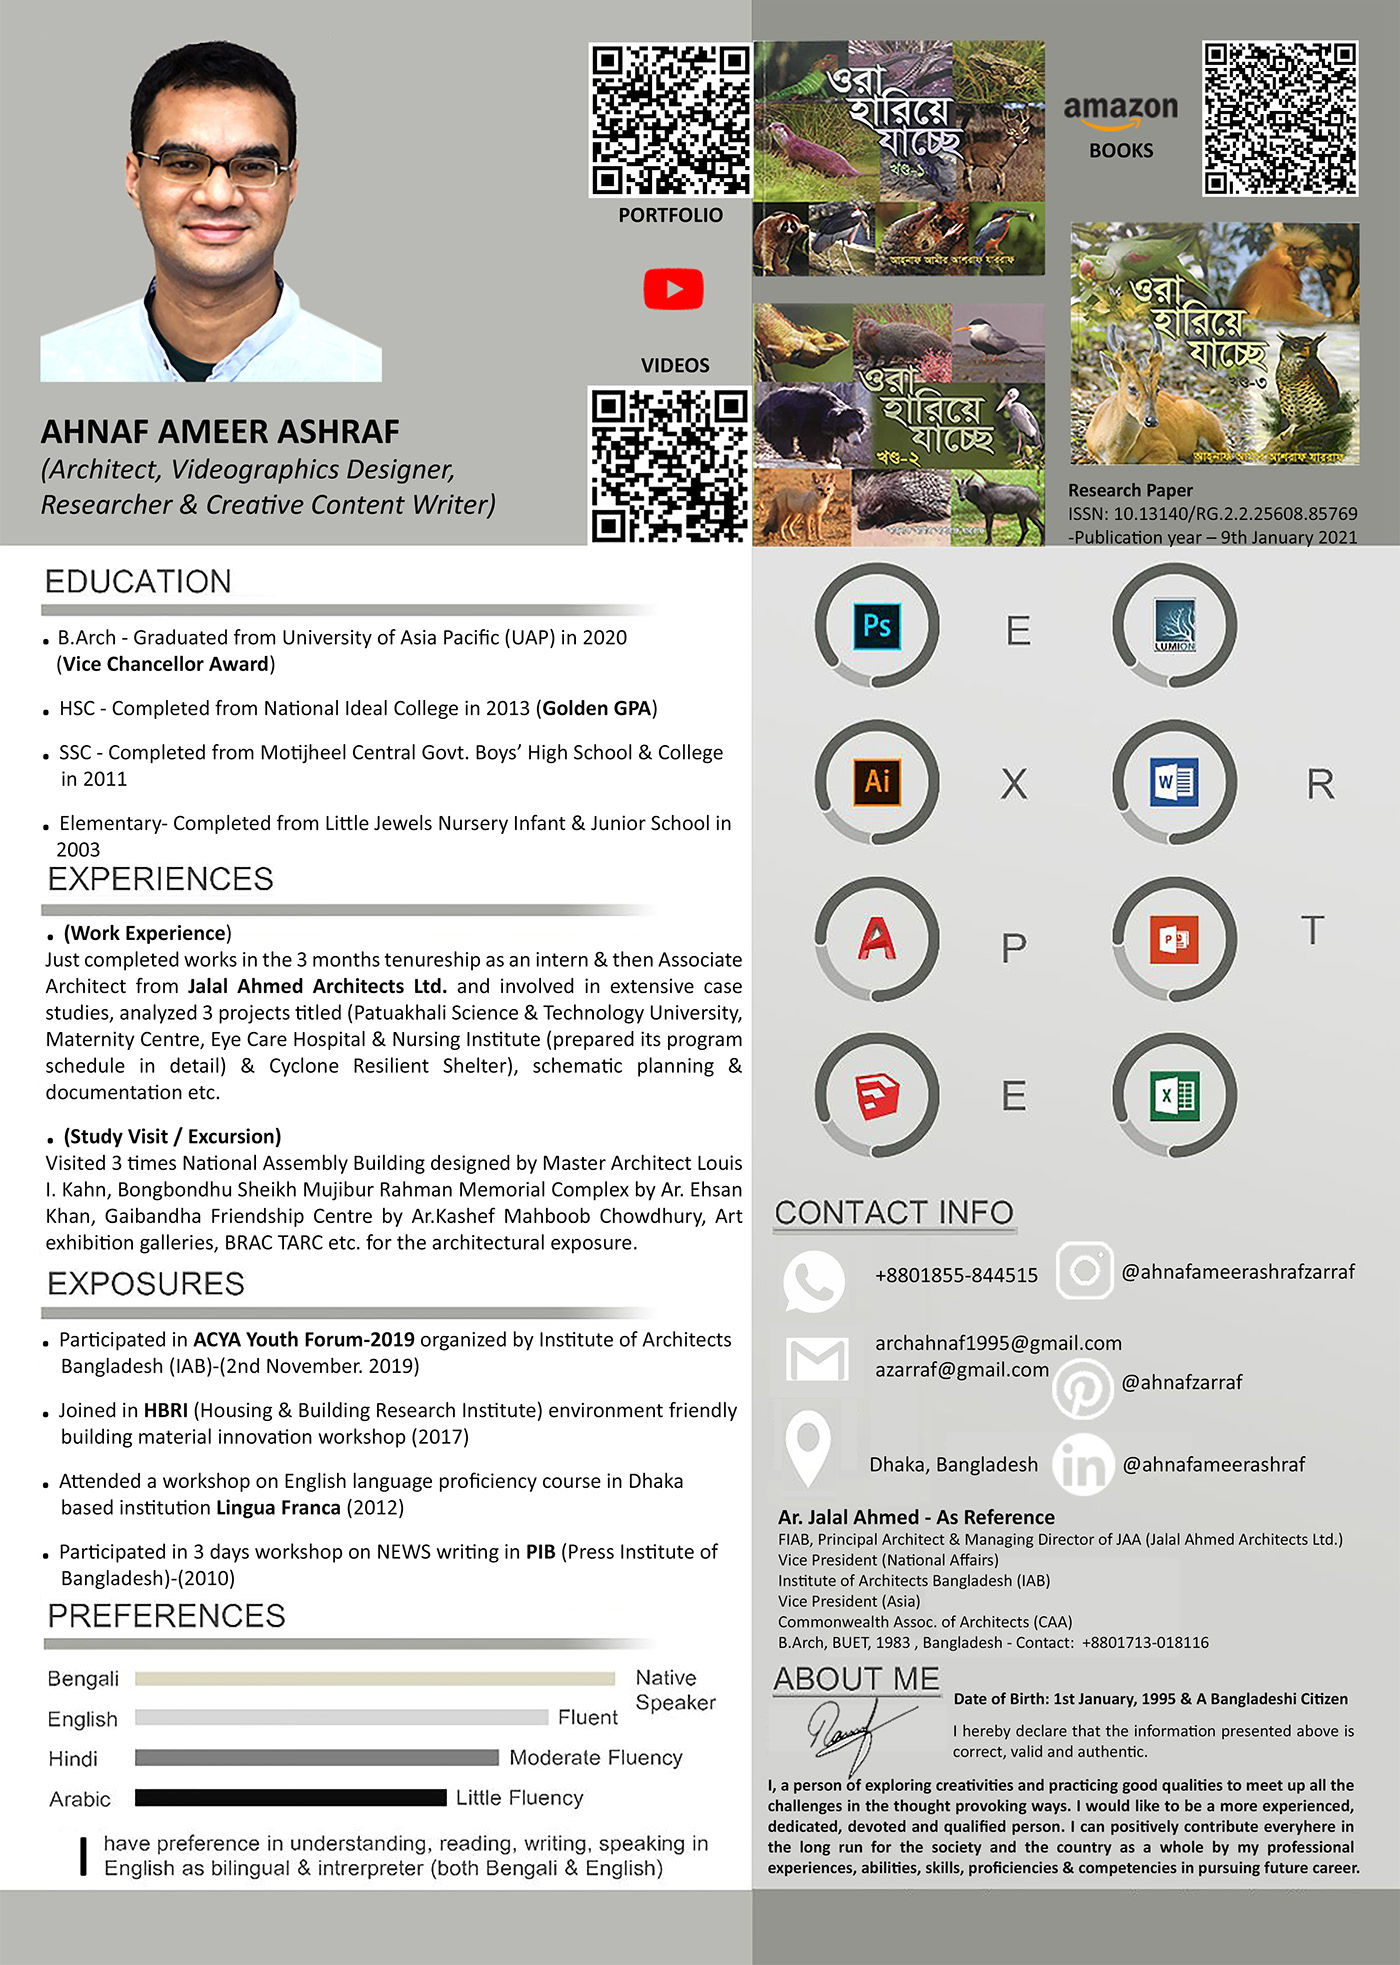 Behance brocure design Flyer Design infographic presentation resume design